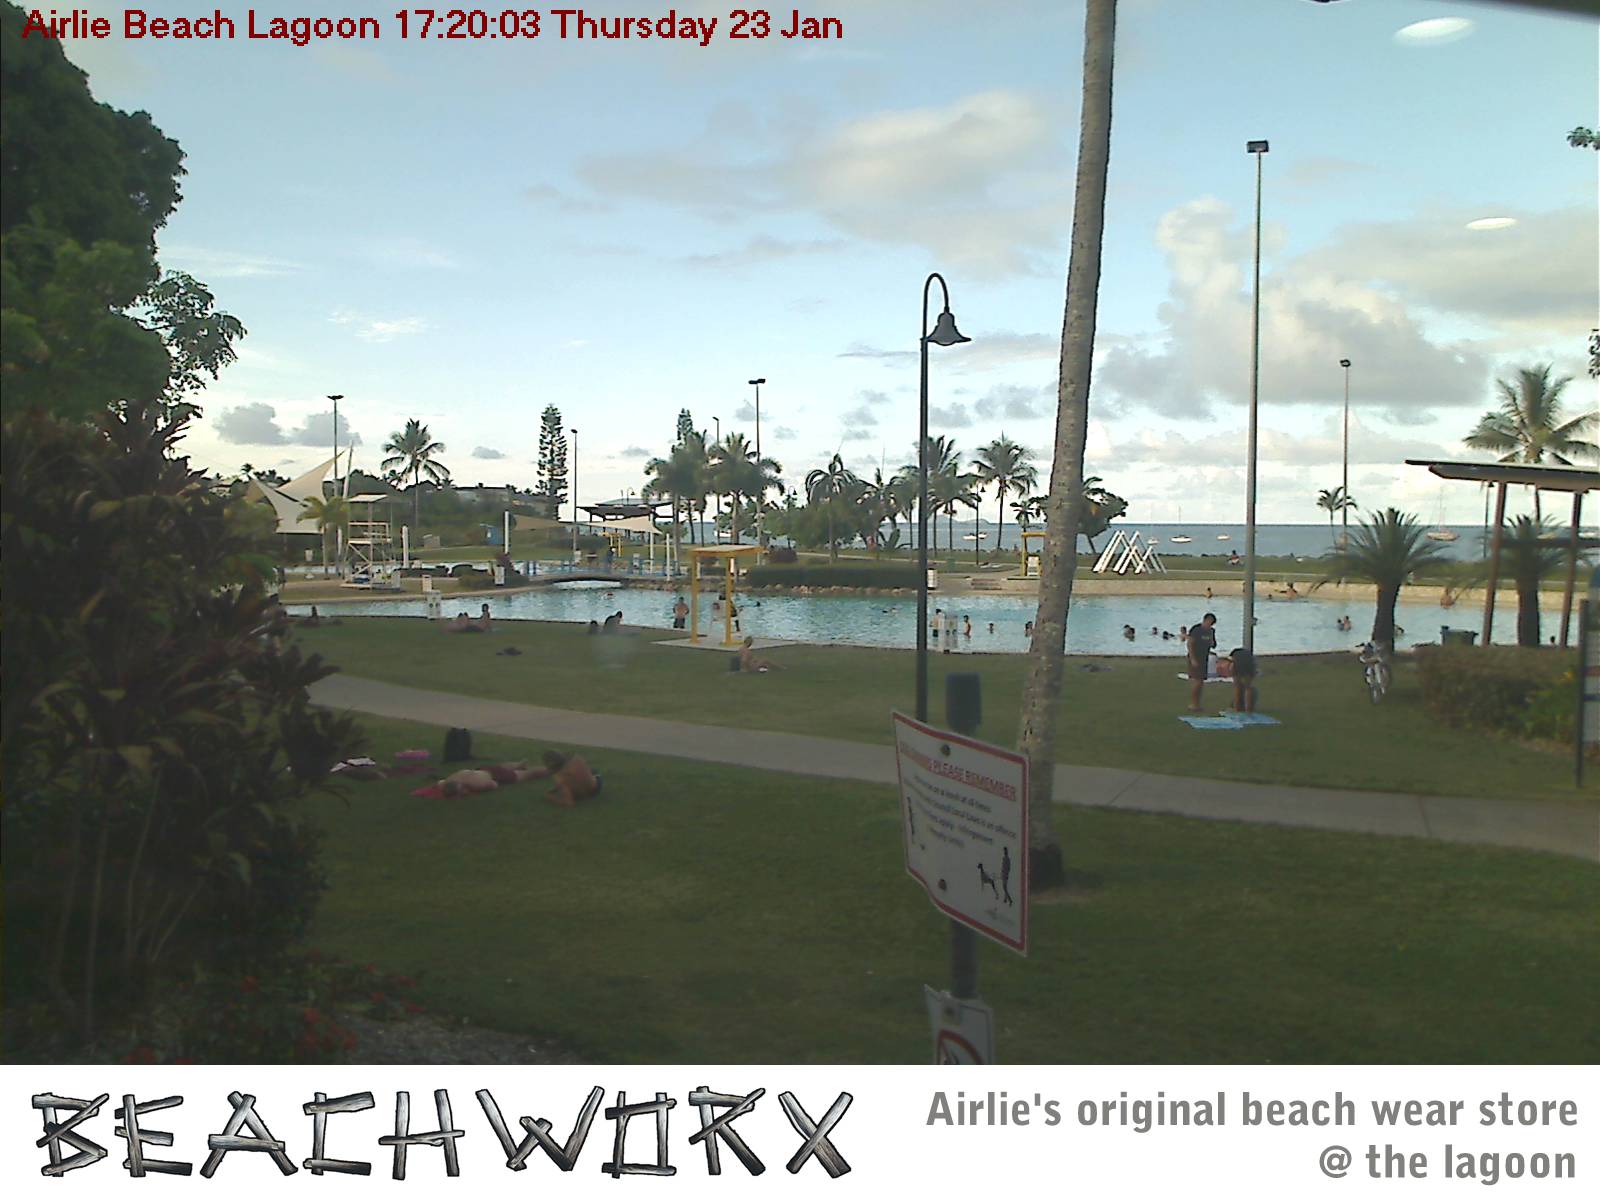 Airlie Beach lagoon web cam